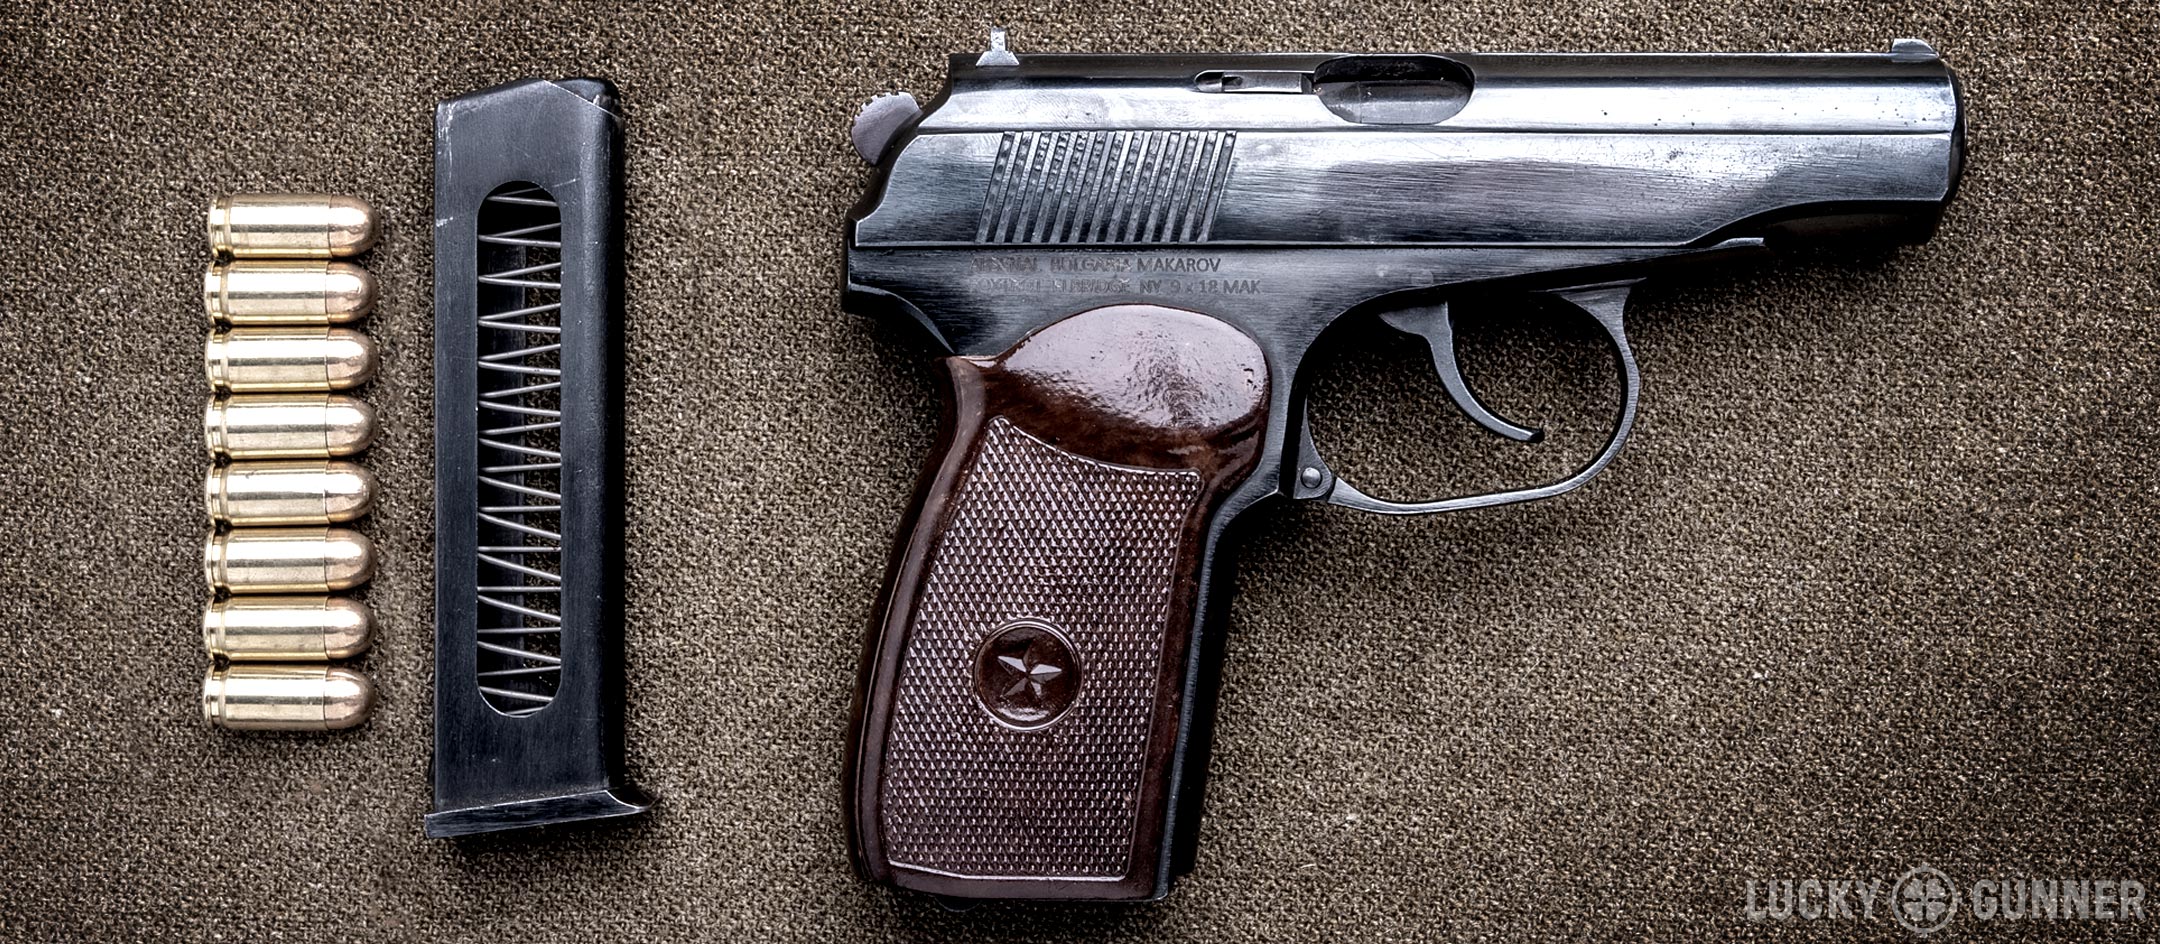 bulgarian makarov pistol 9x18 pistol package